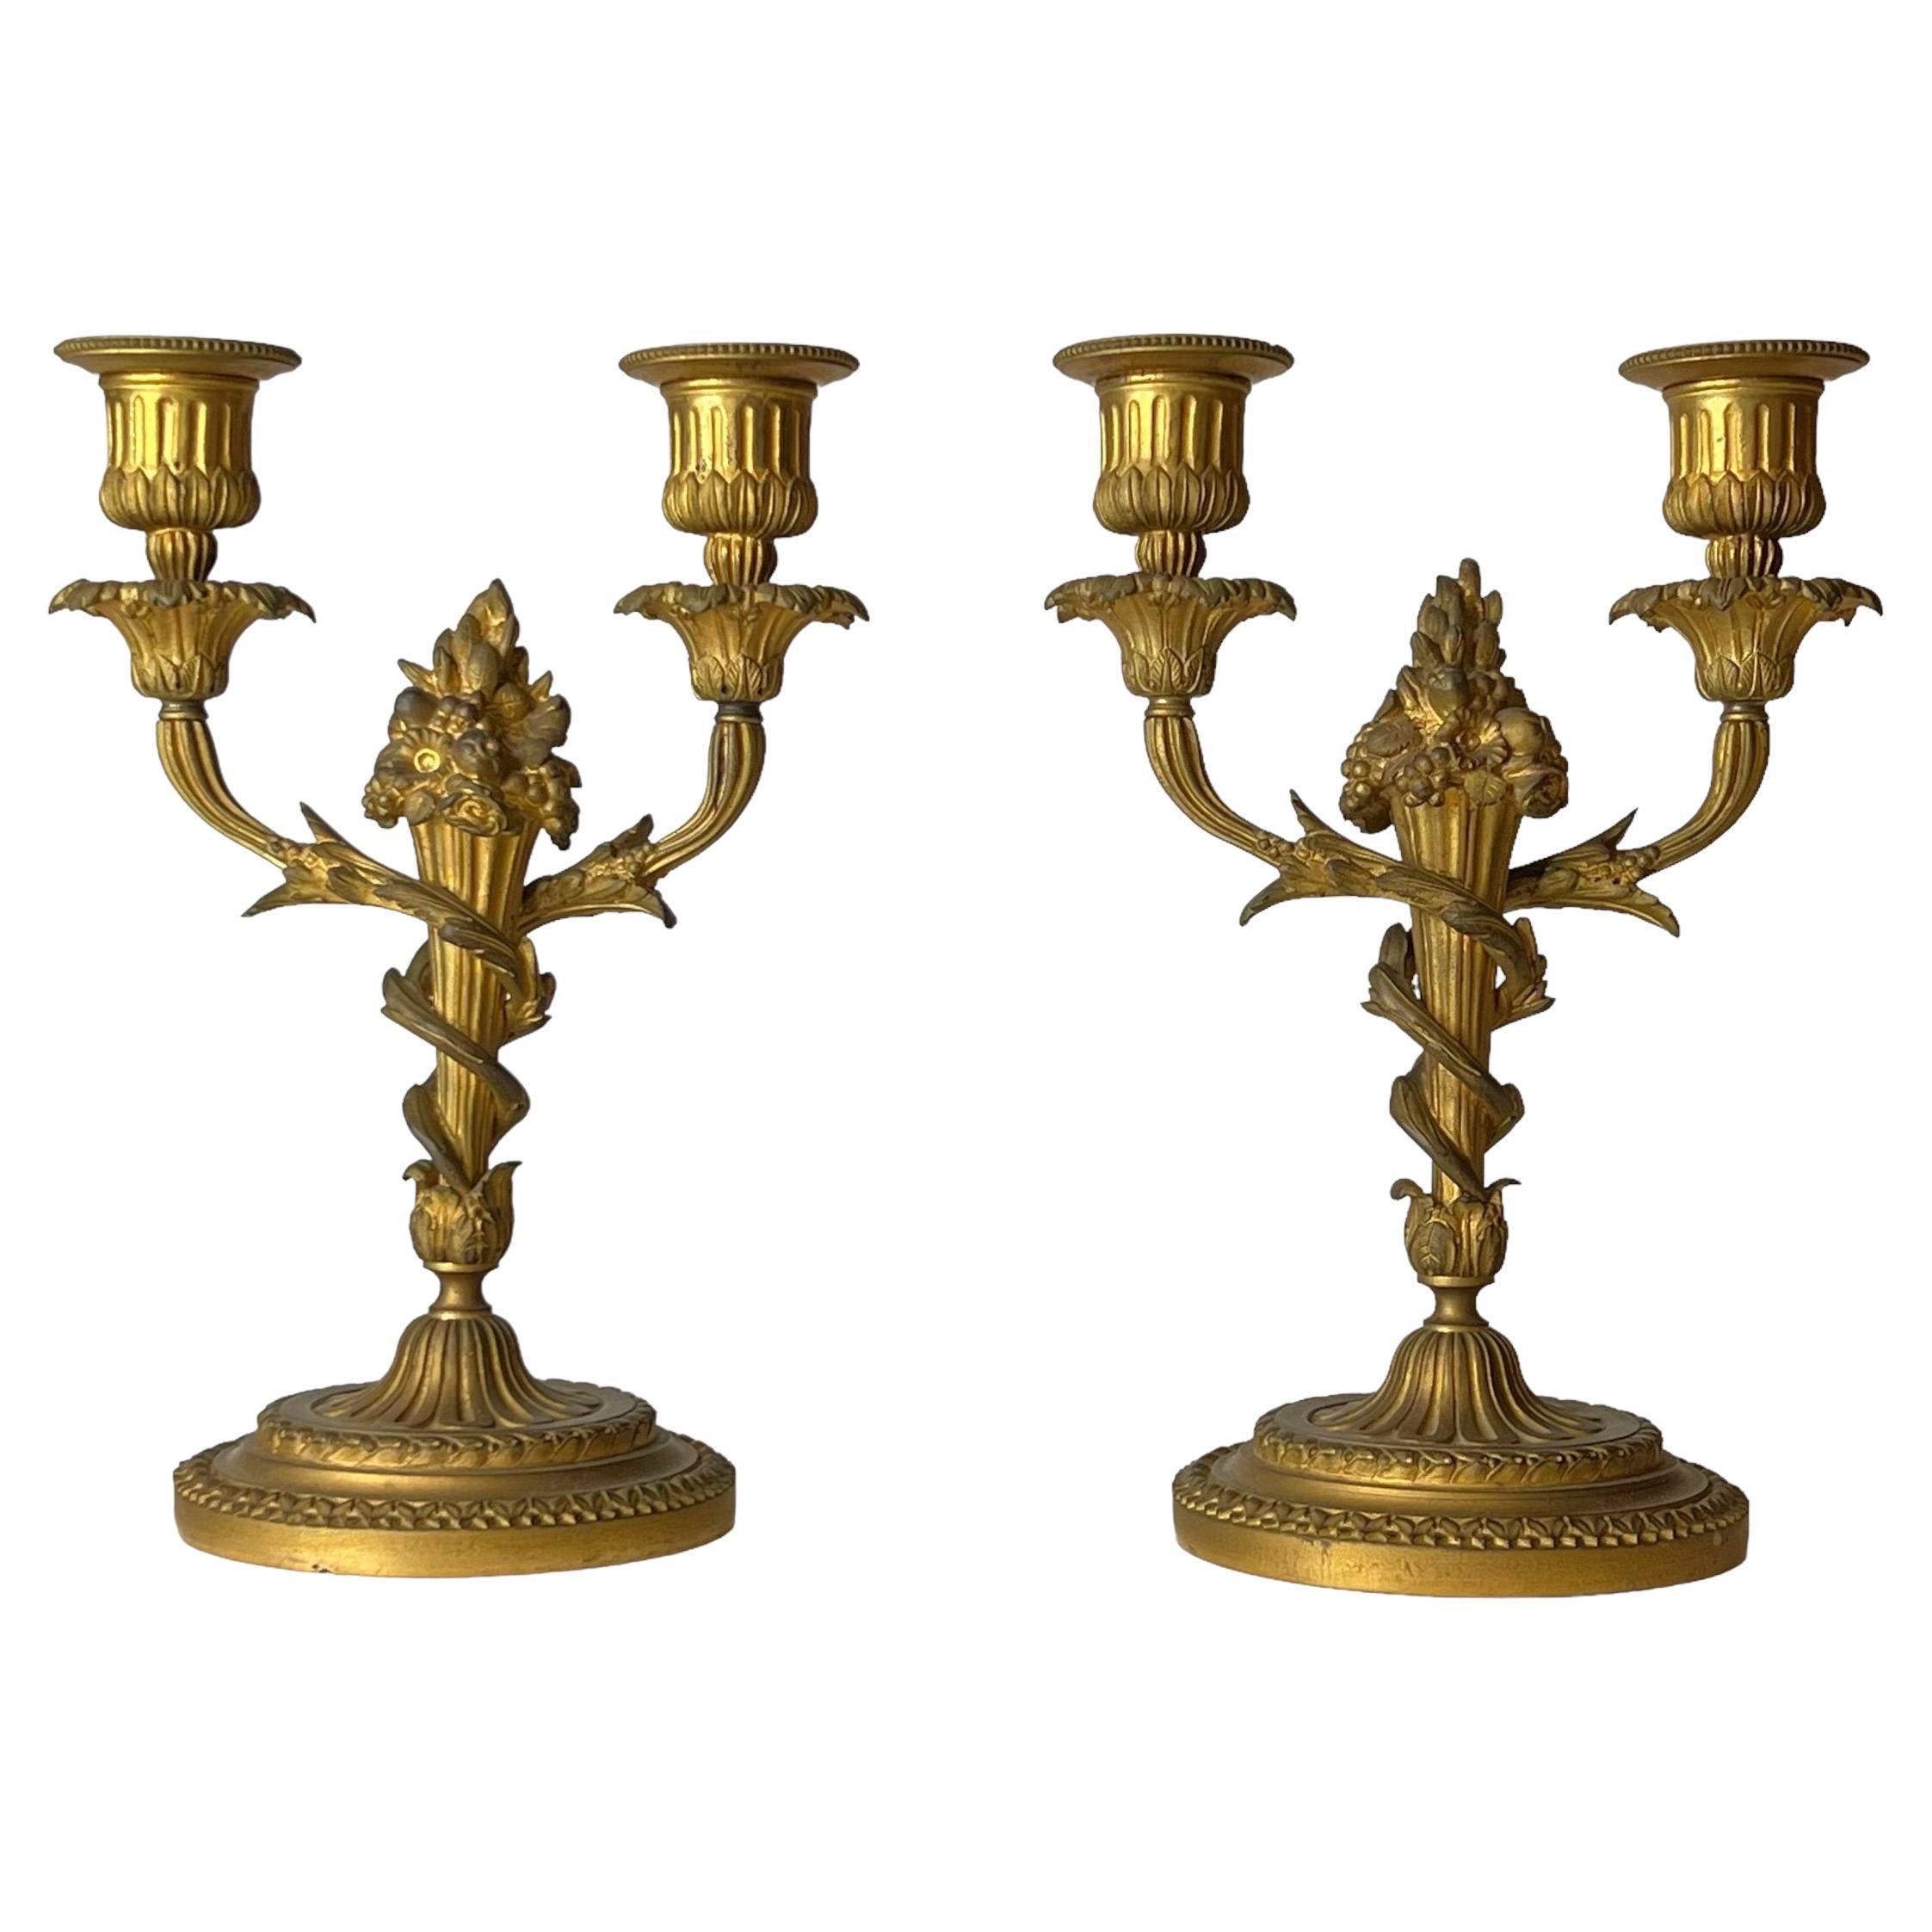 Paire de candélabres à deux lumières en bronze doré de style Louis XVI du XIXe siècle